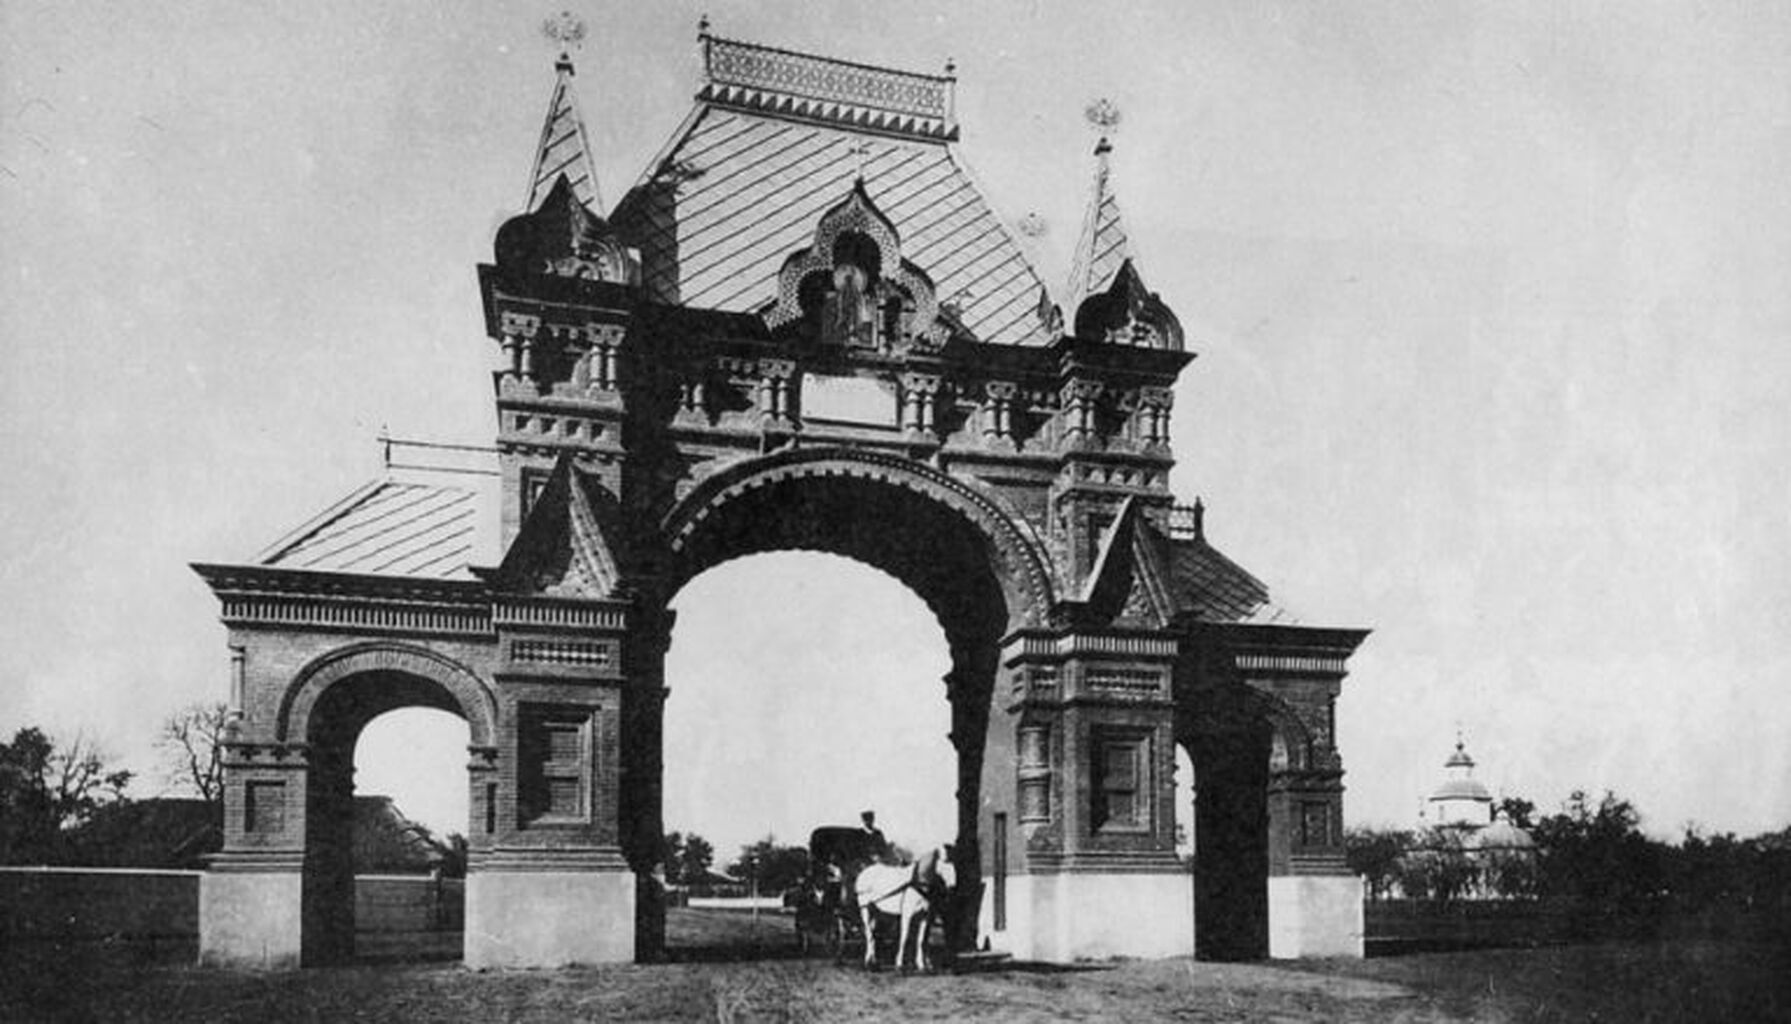 Александровская Триумфальная арка в Краснодаре